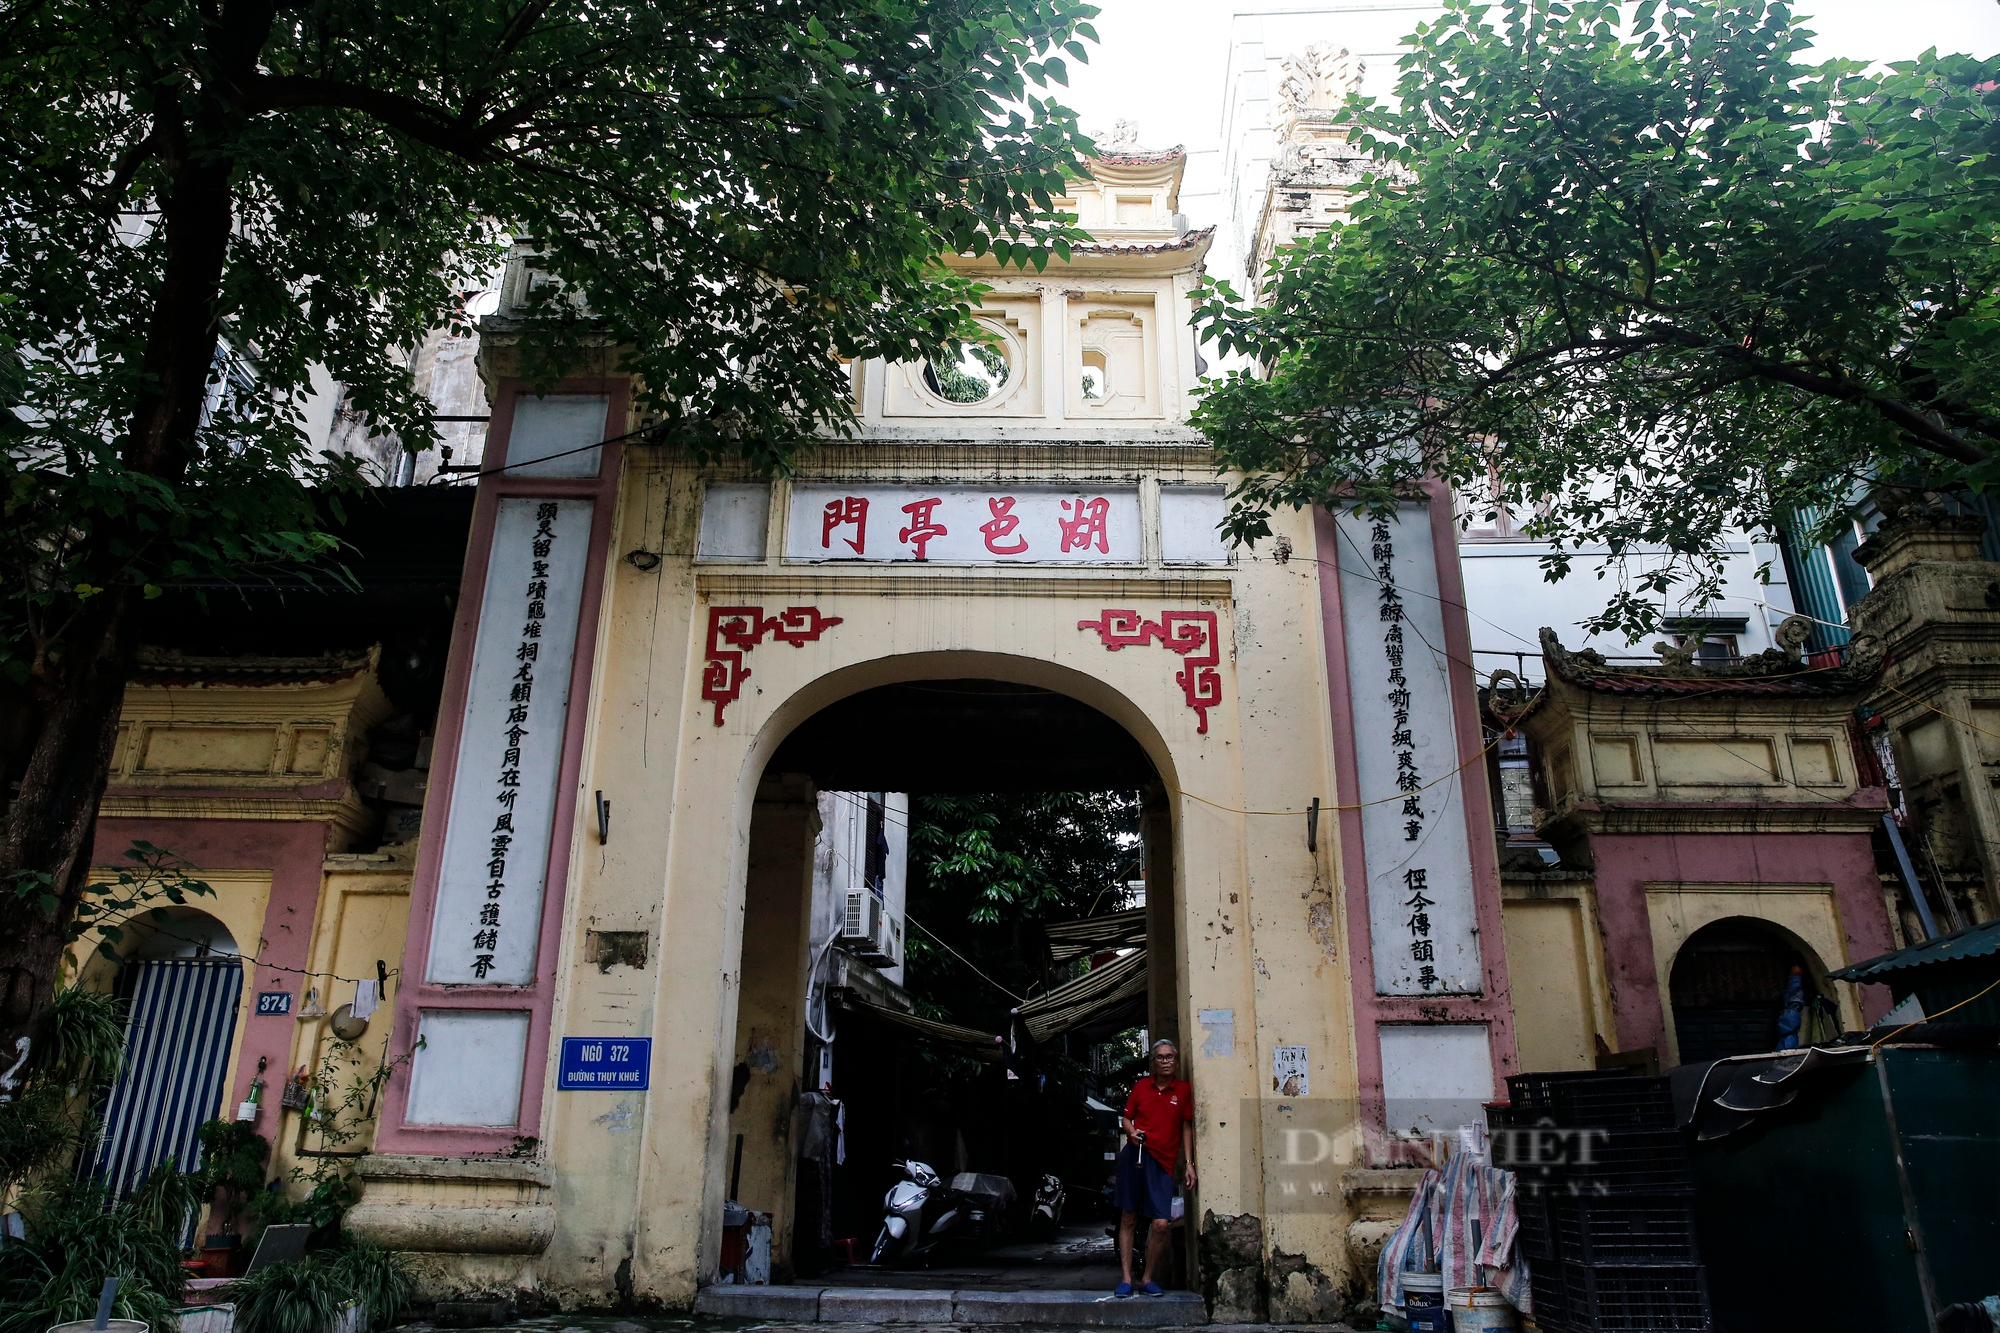 Trầm trồ con phố nhiều cổng, đình làng nhất Hà Nội - Ảnh 13.